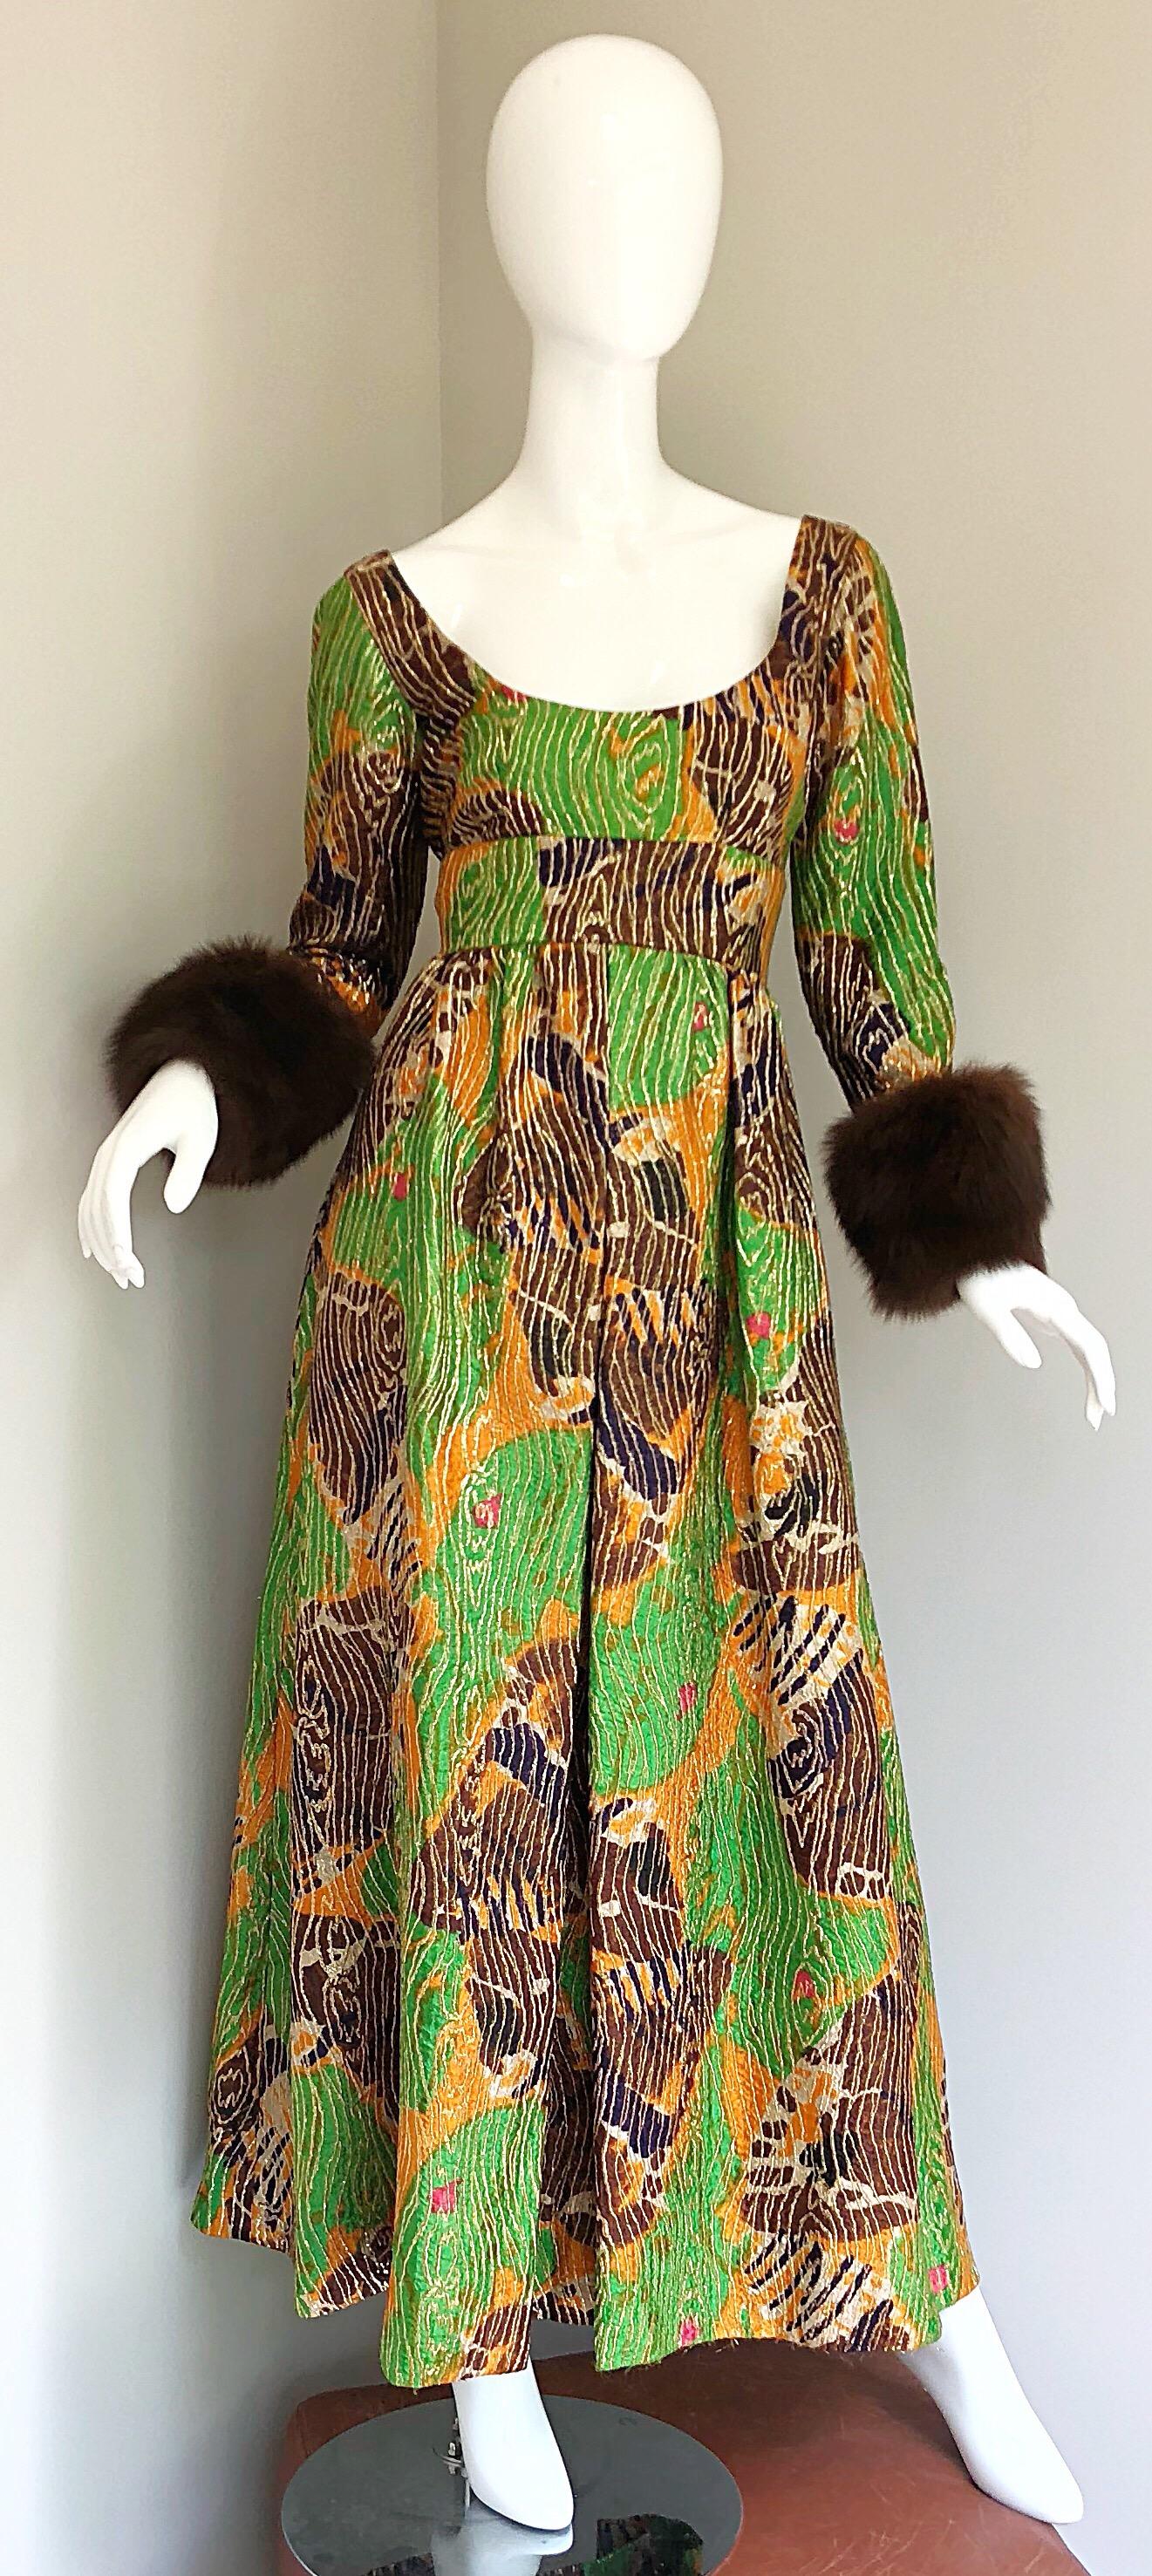 Atemberaubende 1970er Jahre Vintage LILLIE RUBIN grün, lila und orange Seide metallischen Kleid! Mit weichen Ärmelbündchen aus echtem Nerzpelz. Tailliertes Mieder mit ausladendem Rockteil. Abstrakter Druck in leuchtenden Grün-, Violett- und